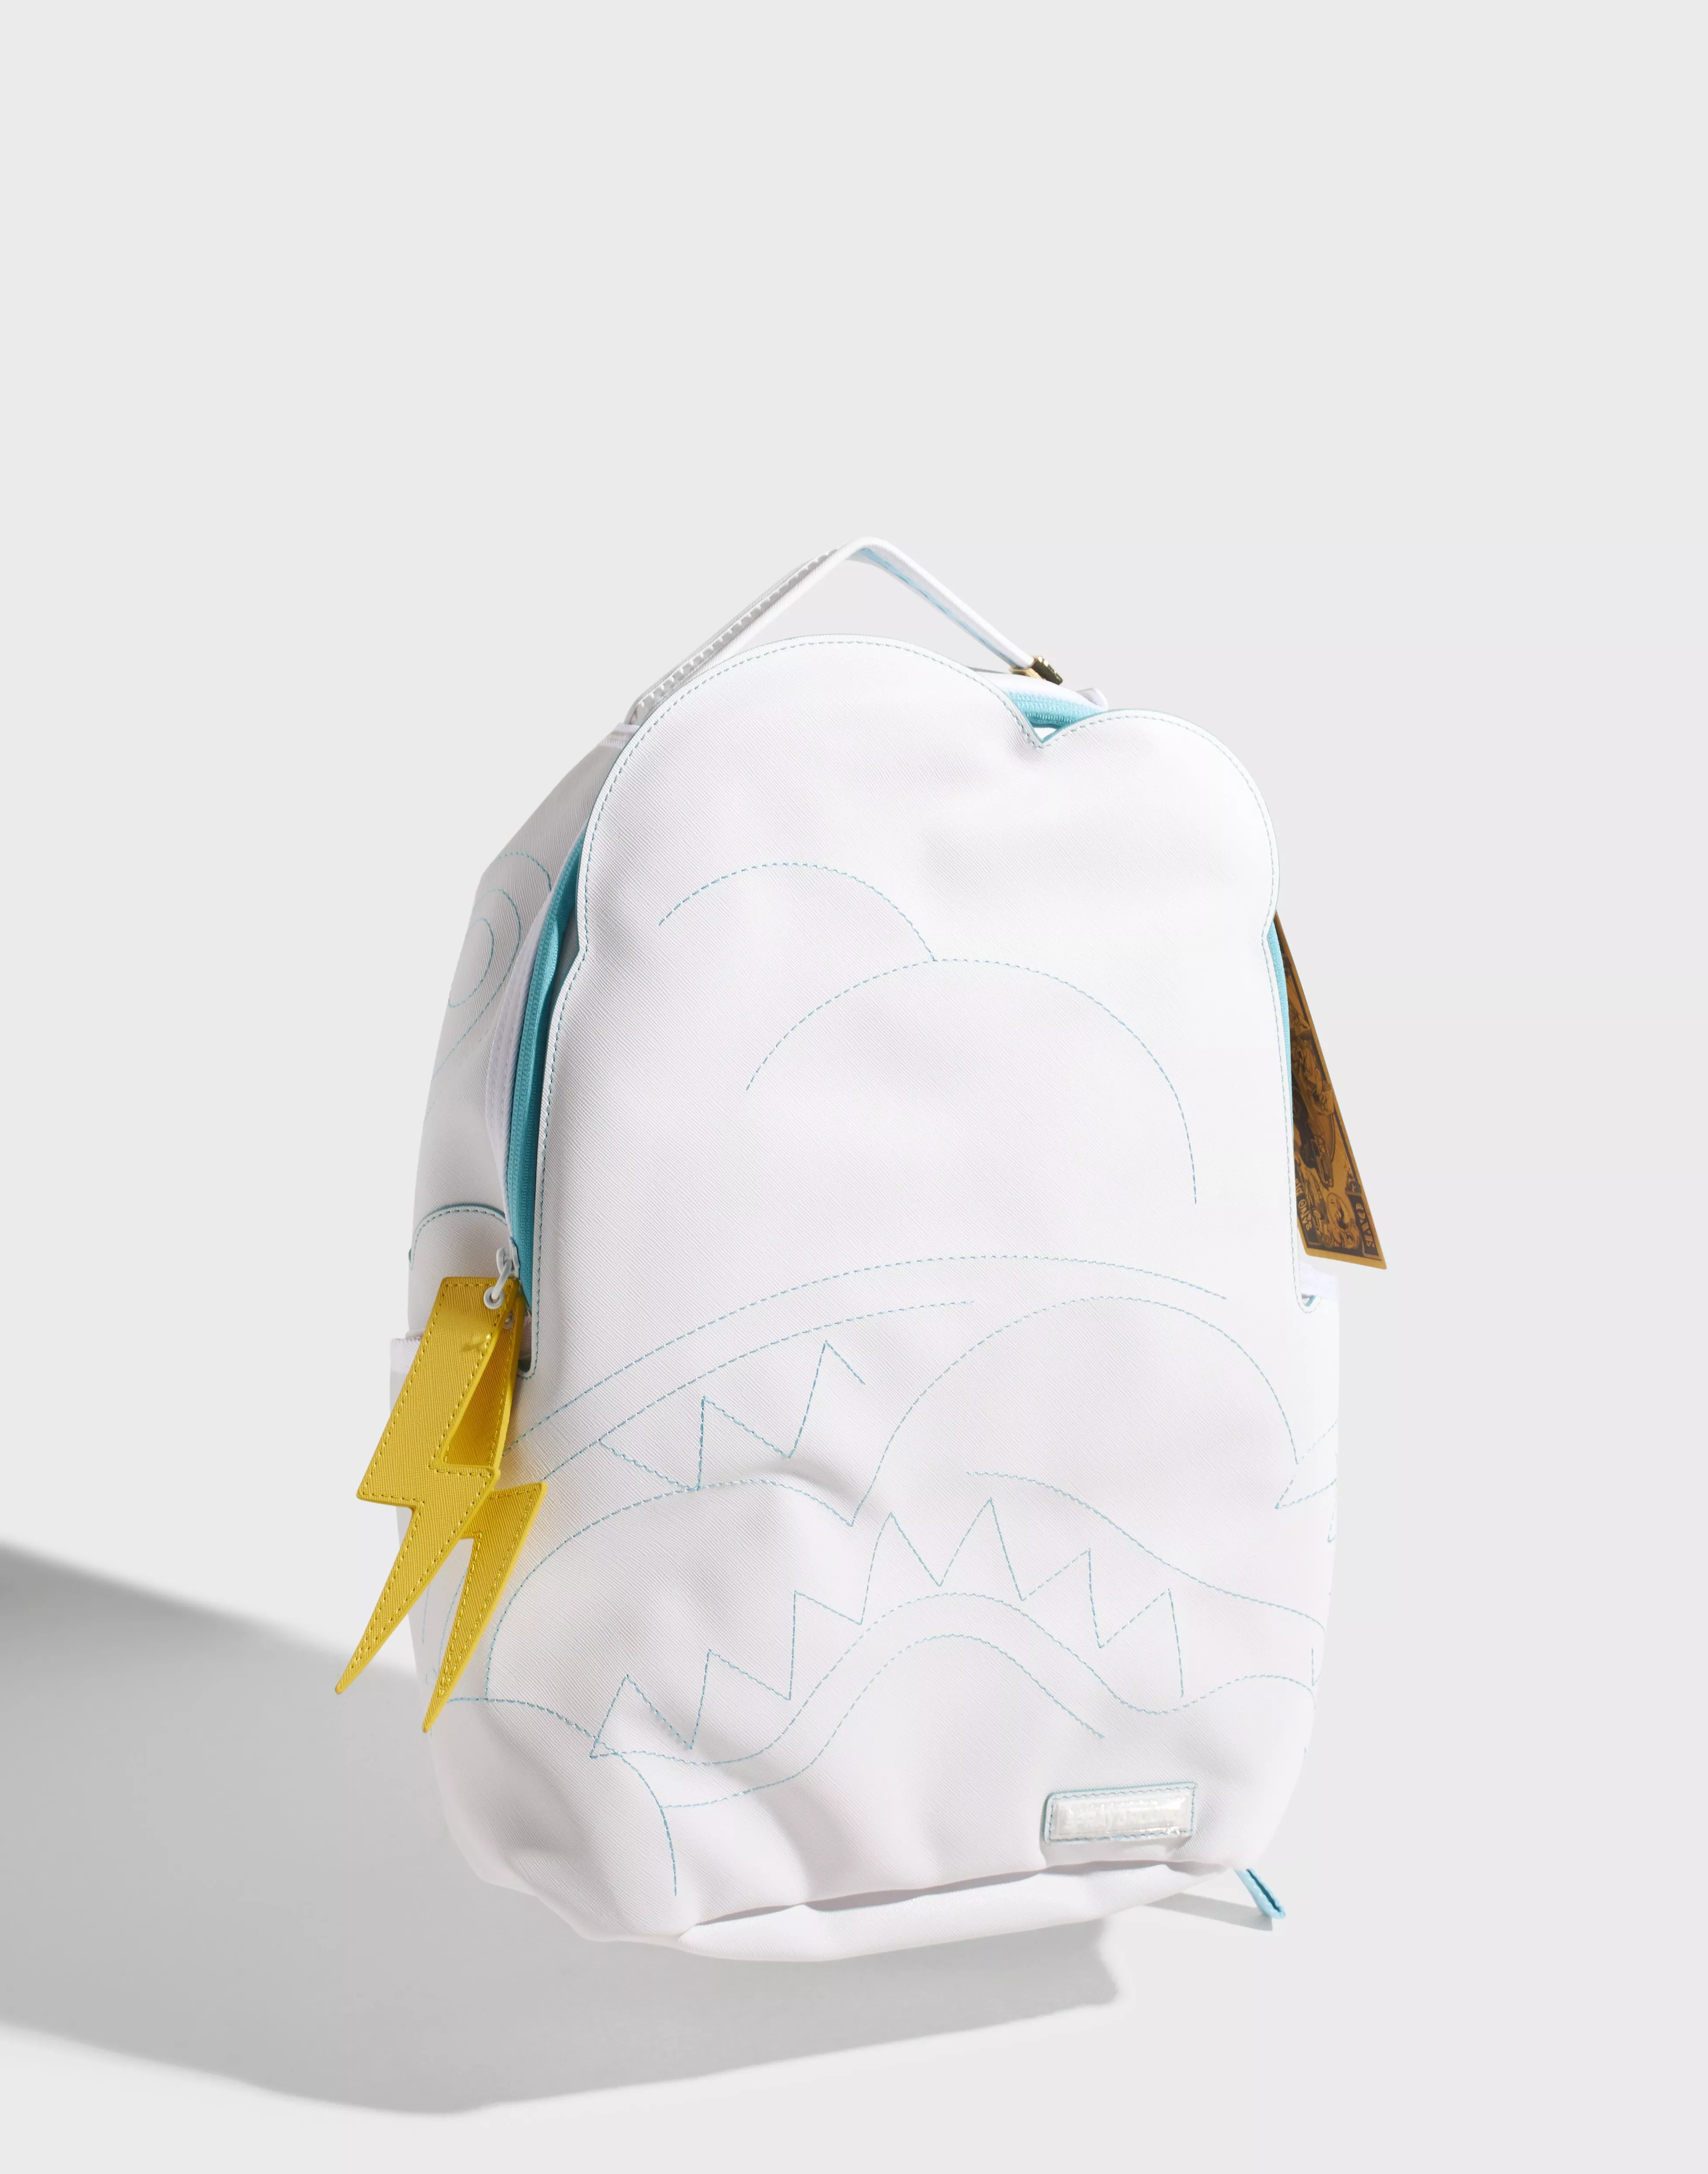 Sprayground - Quilted Iridescent Northern DLXVF Backpack